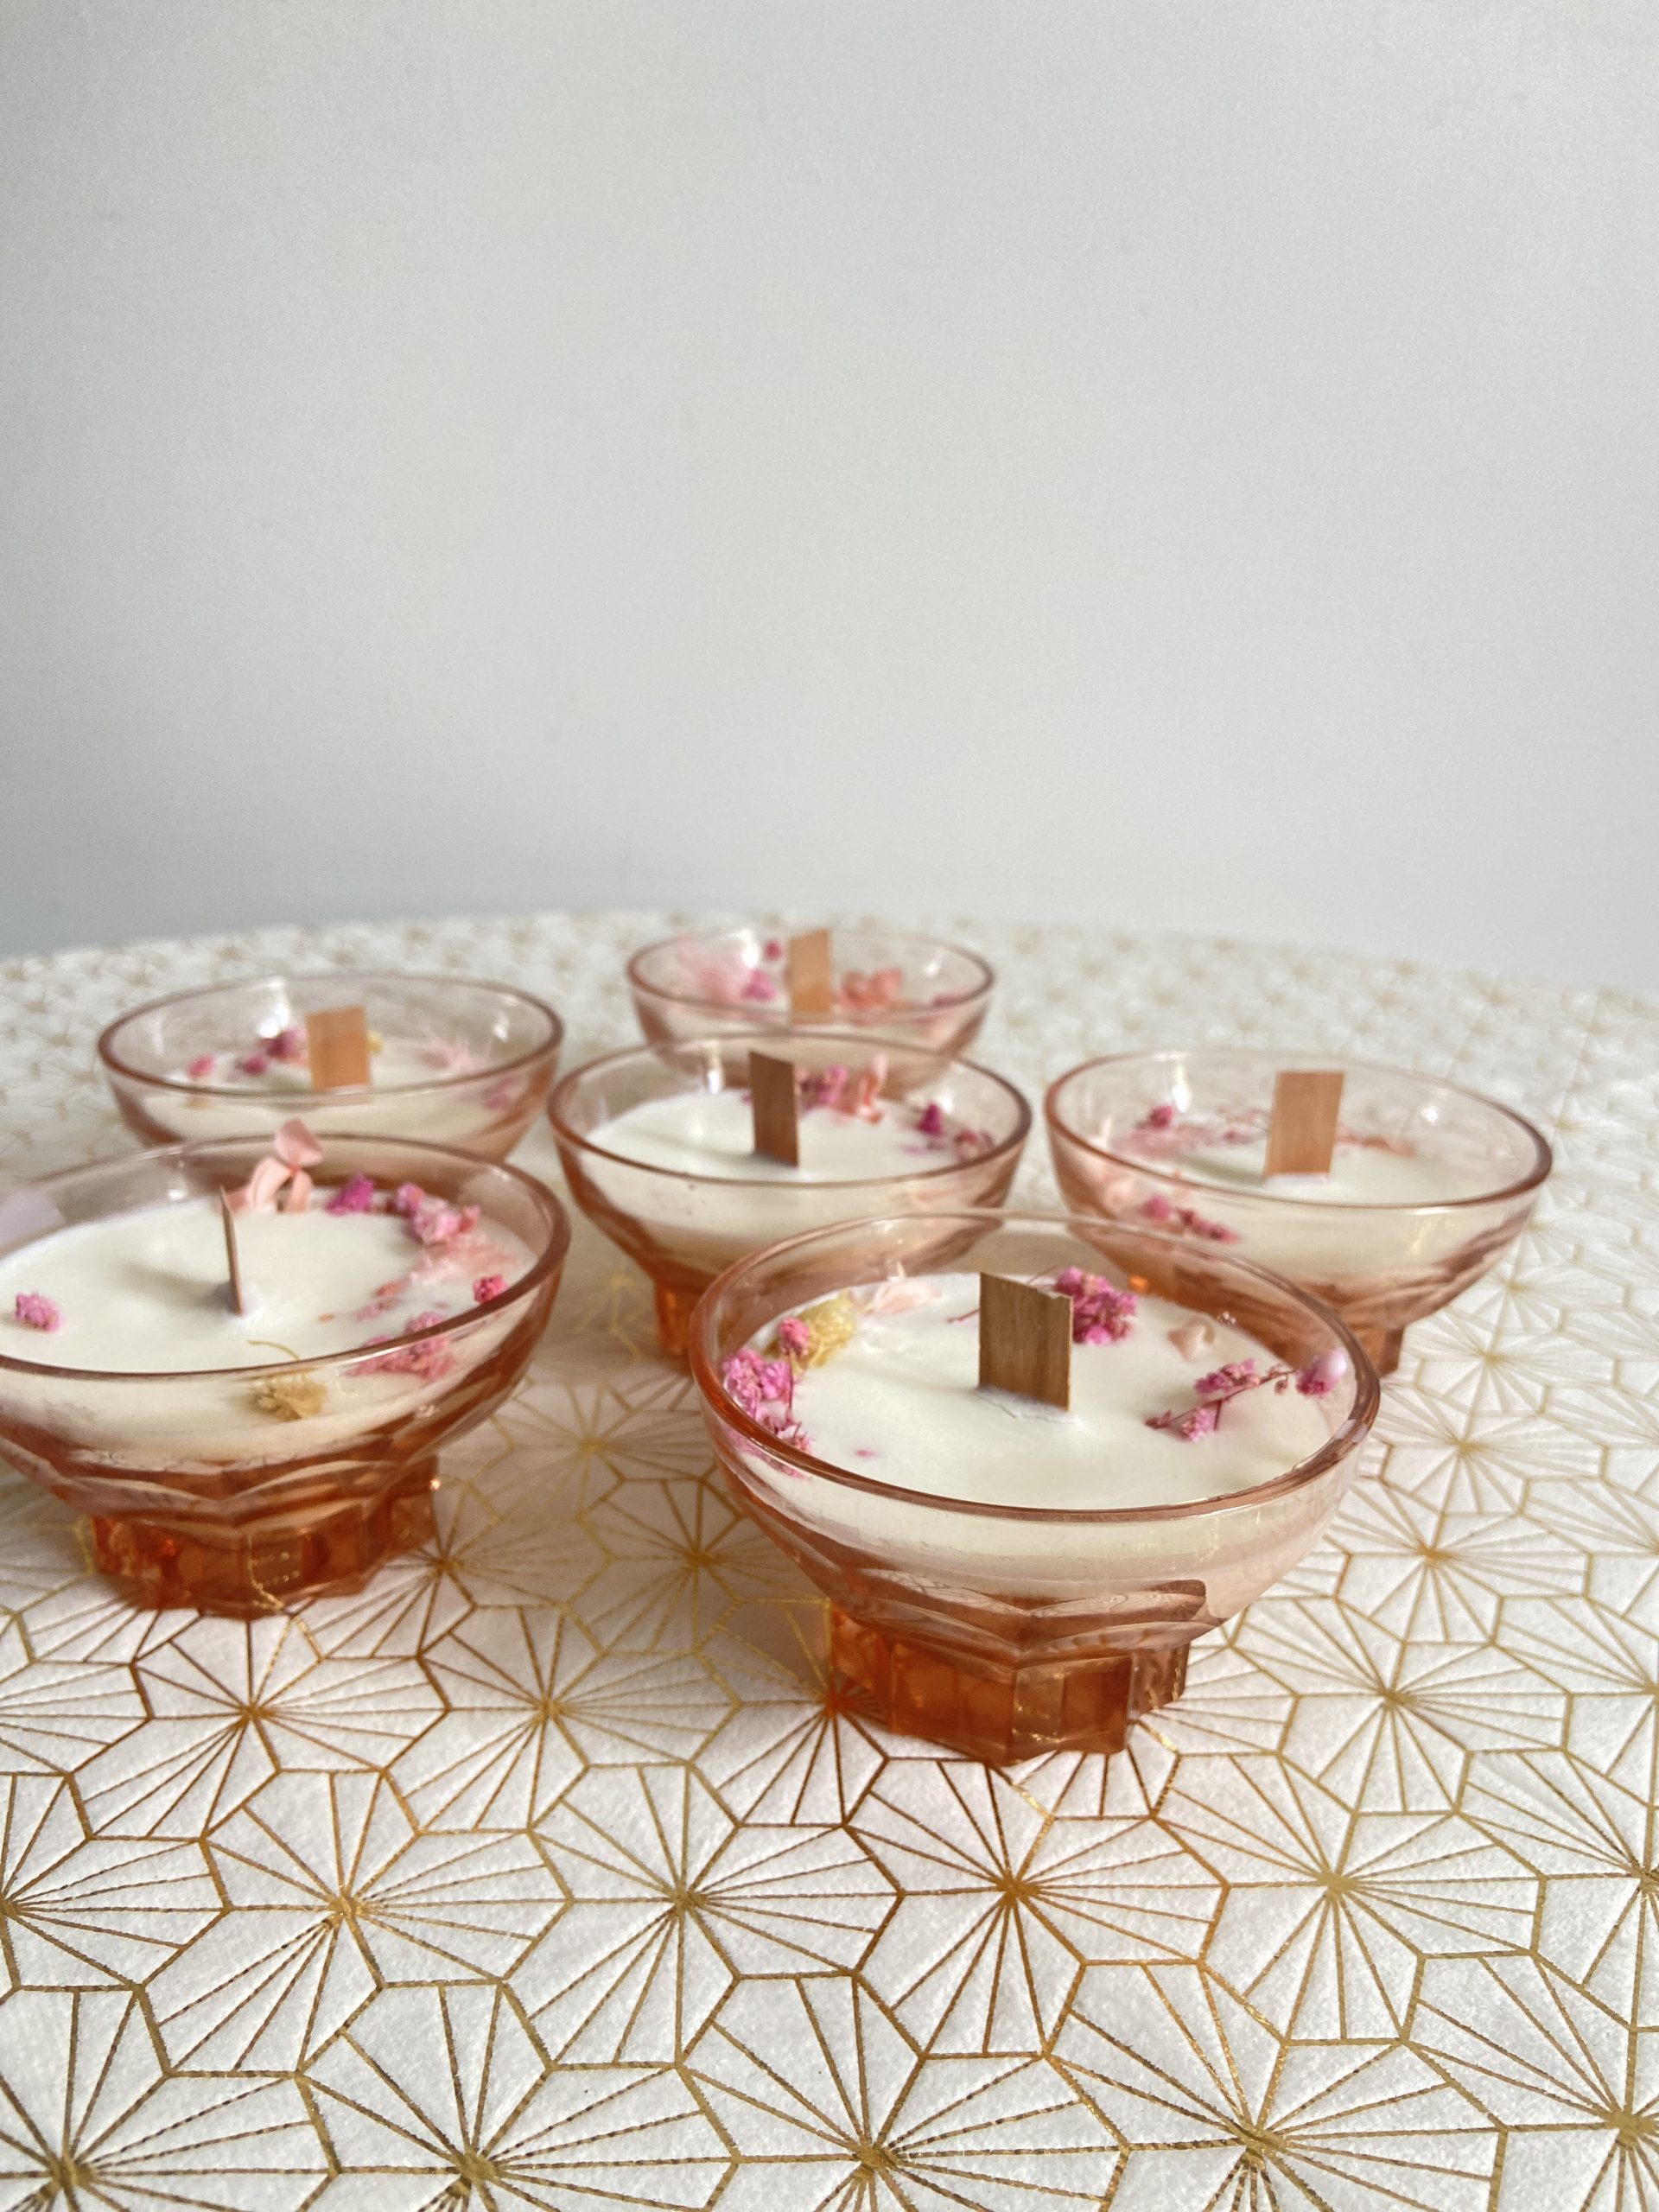 "Ivresse" - Bougie végétale au décor floral dans une coupe à champagne vintage rose